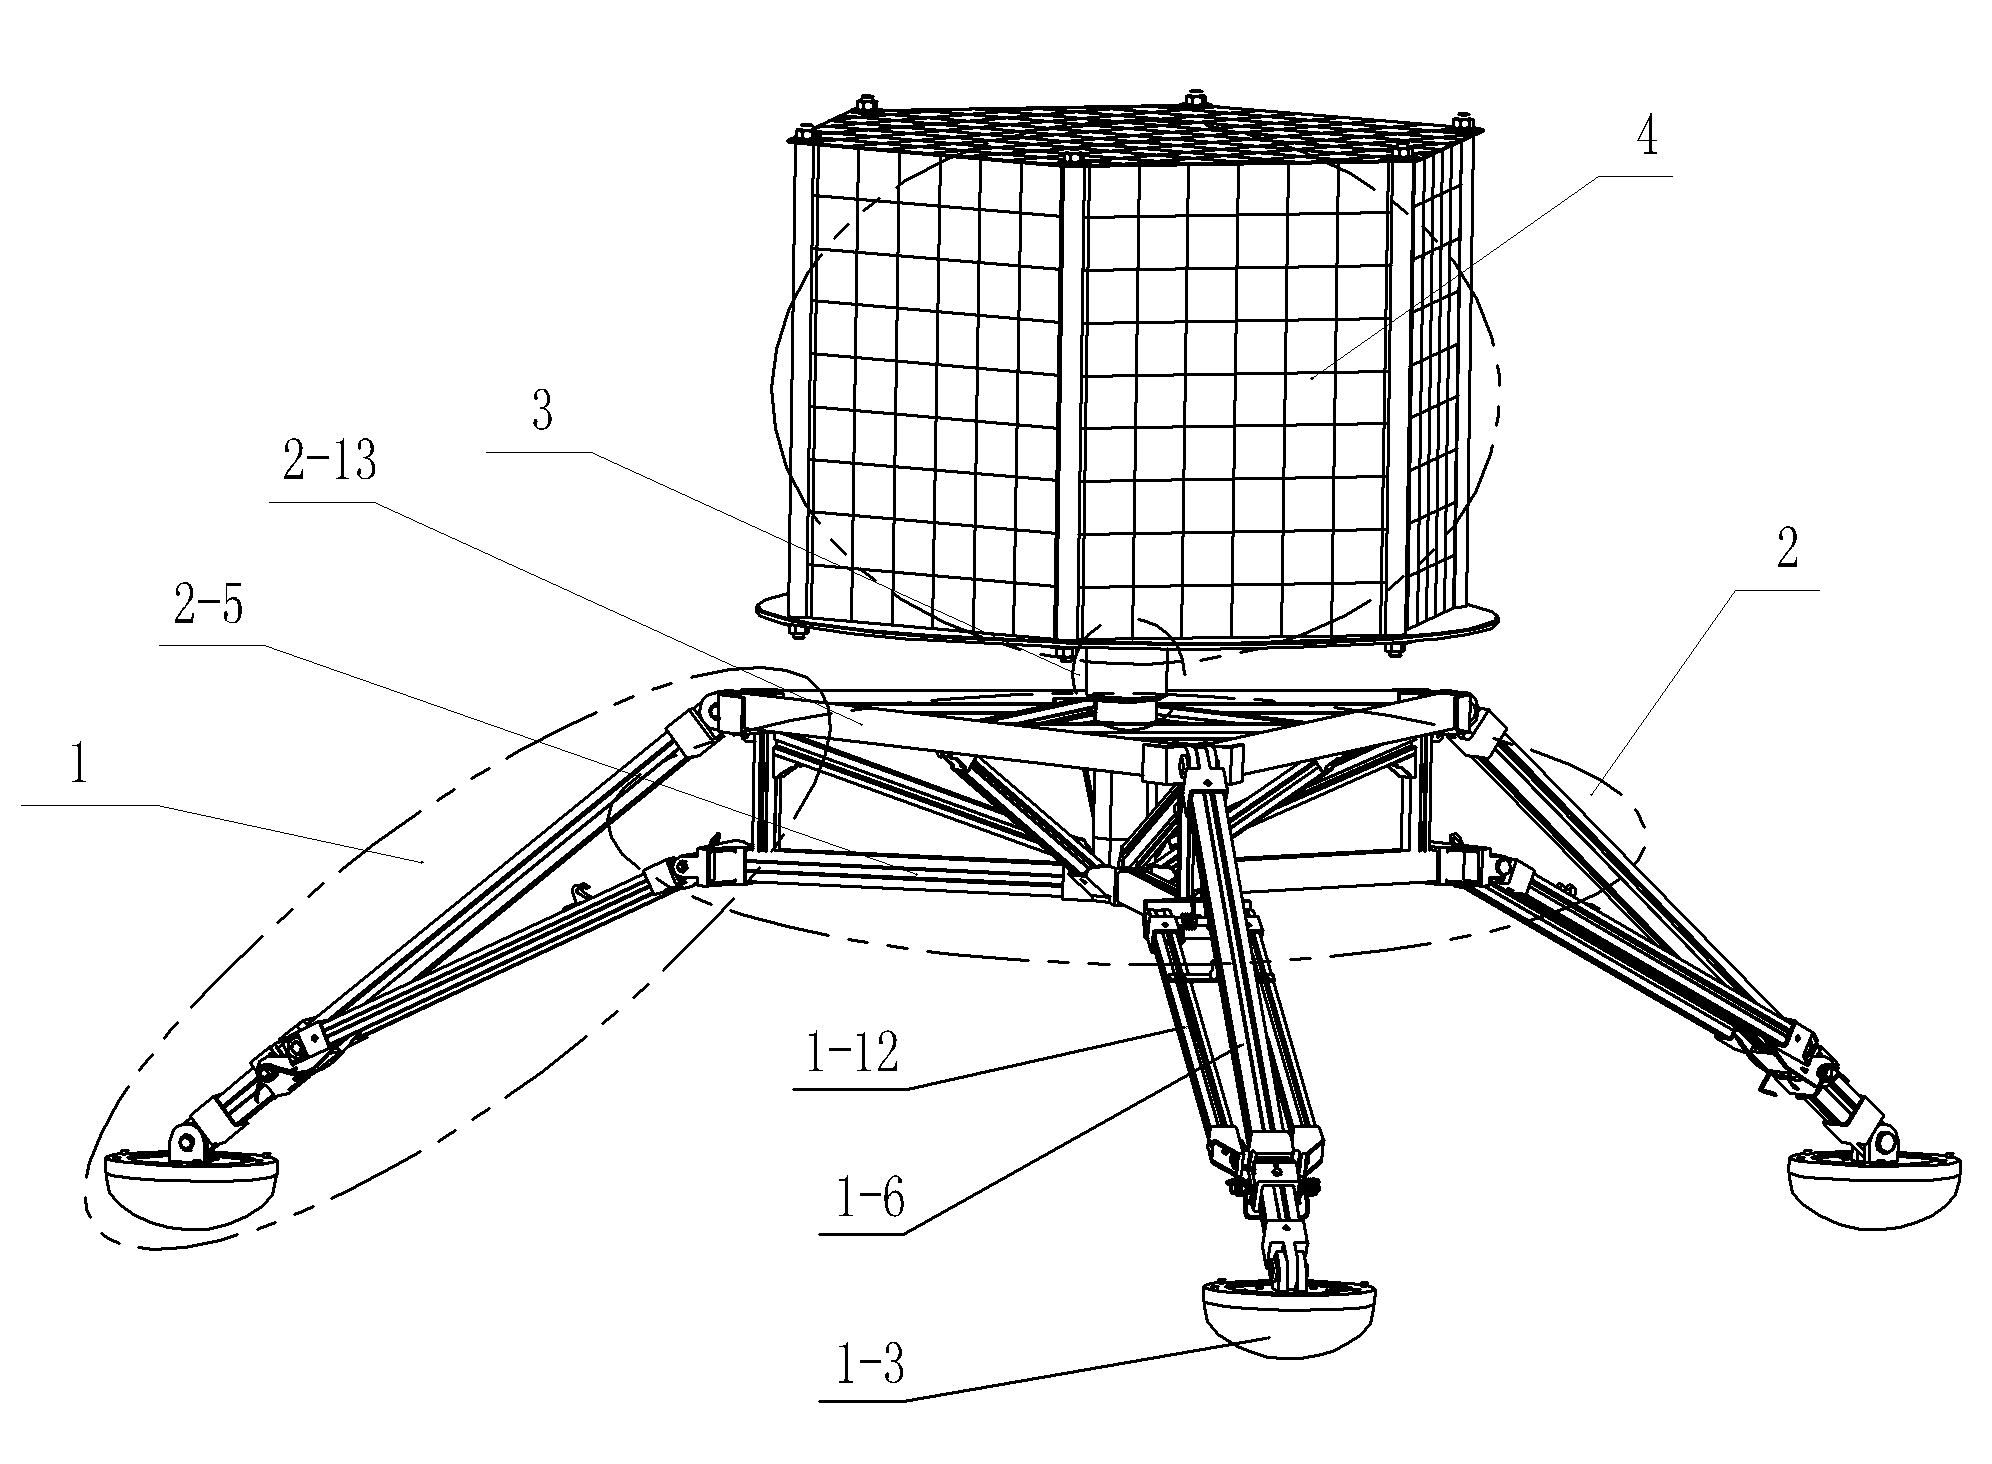 Folding lightweight landing mechanism